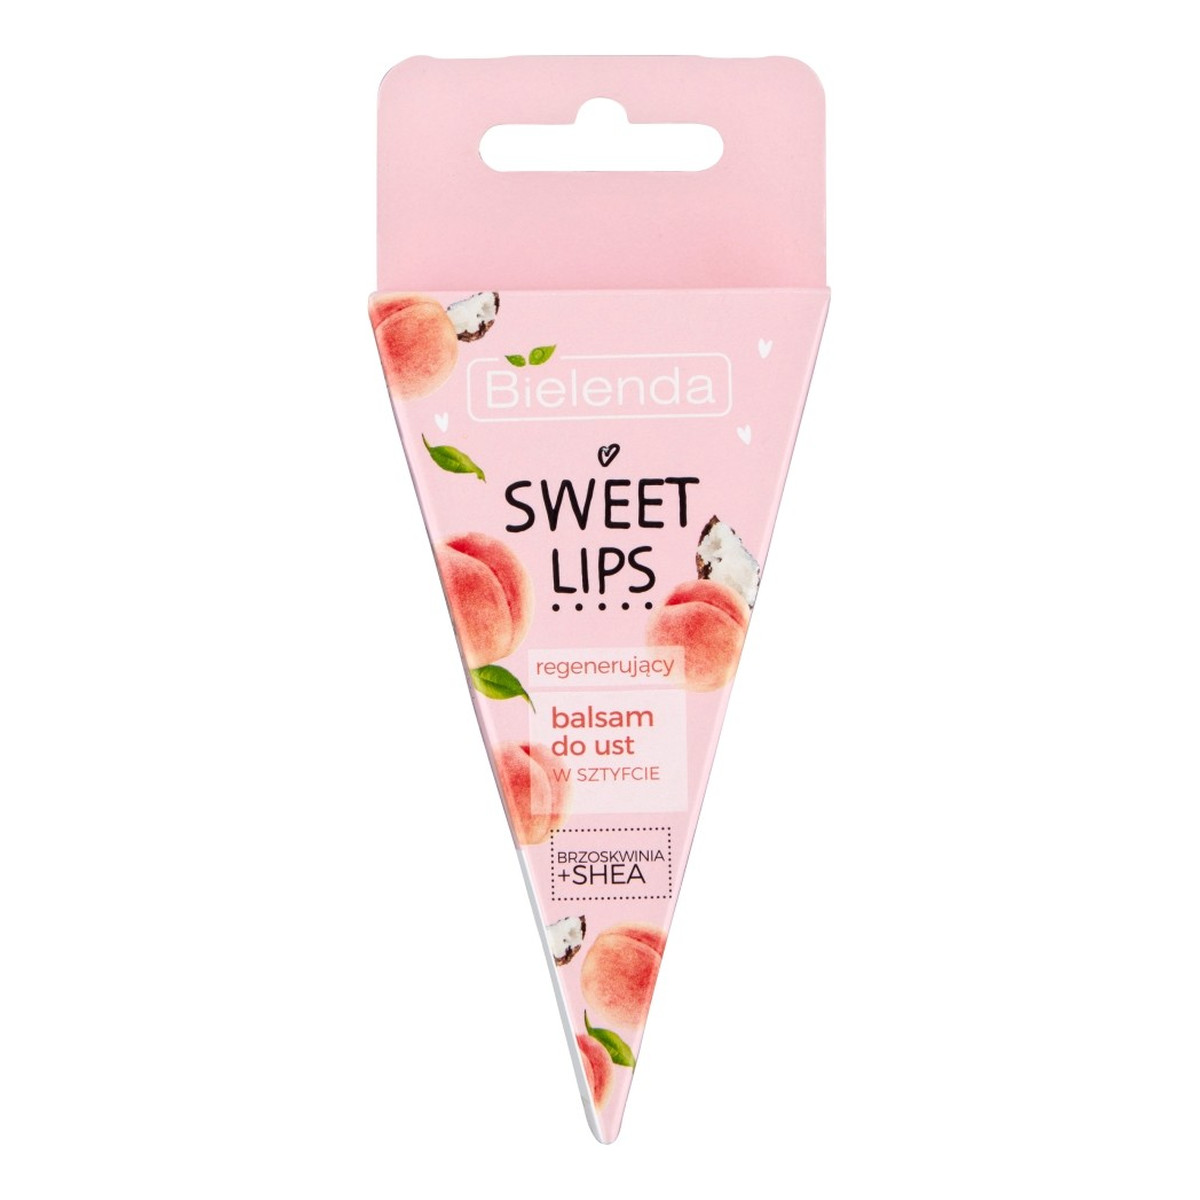 Bielenda Sweet Lips Balsam do ust regenerujący - Brzoskwinia i Masło Shea 3g